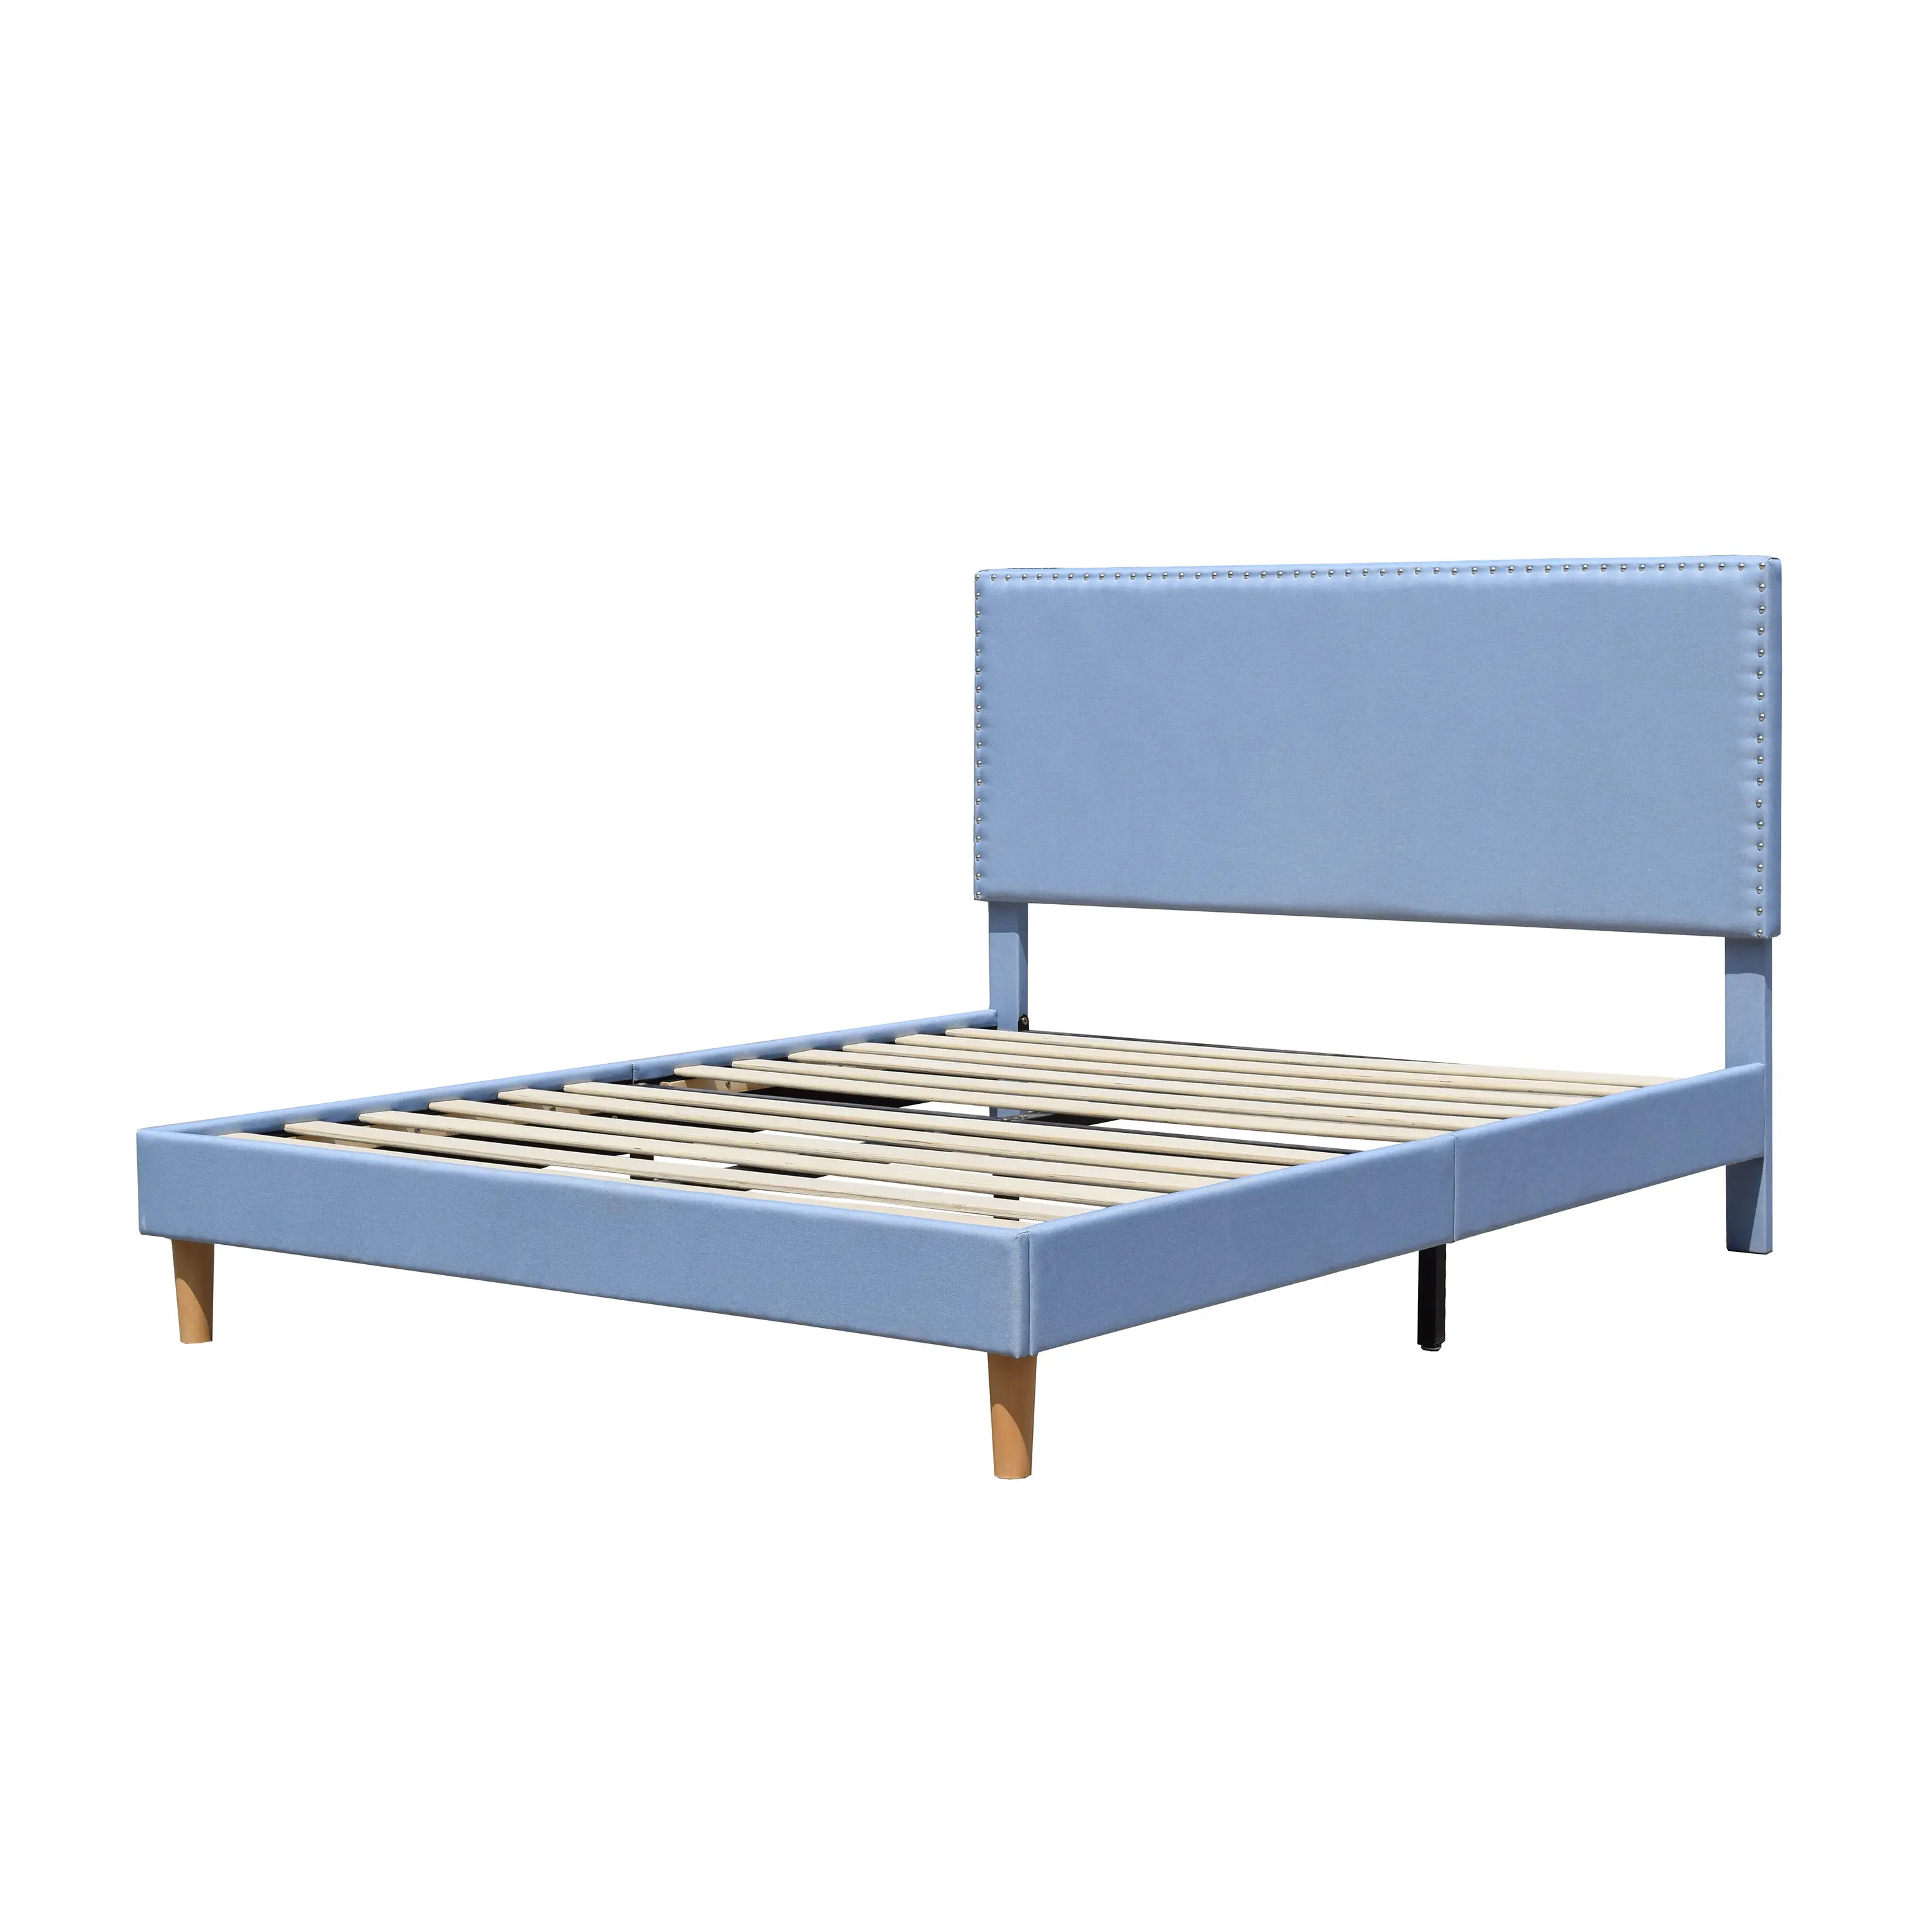 Quadro de cama de linho azul barato estilo americano, quadro dobro ajustável de tecido linho com tamanho único